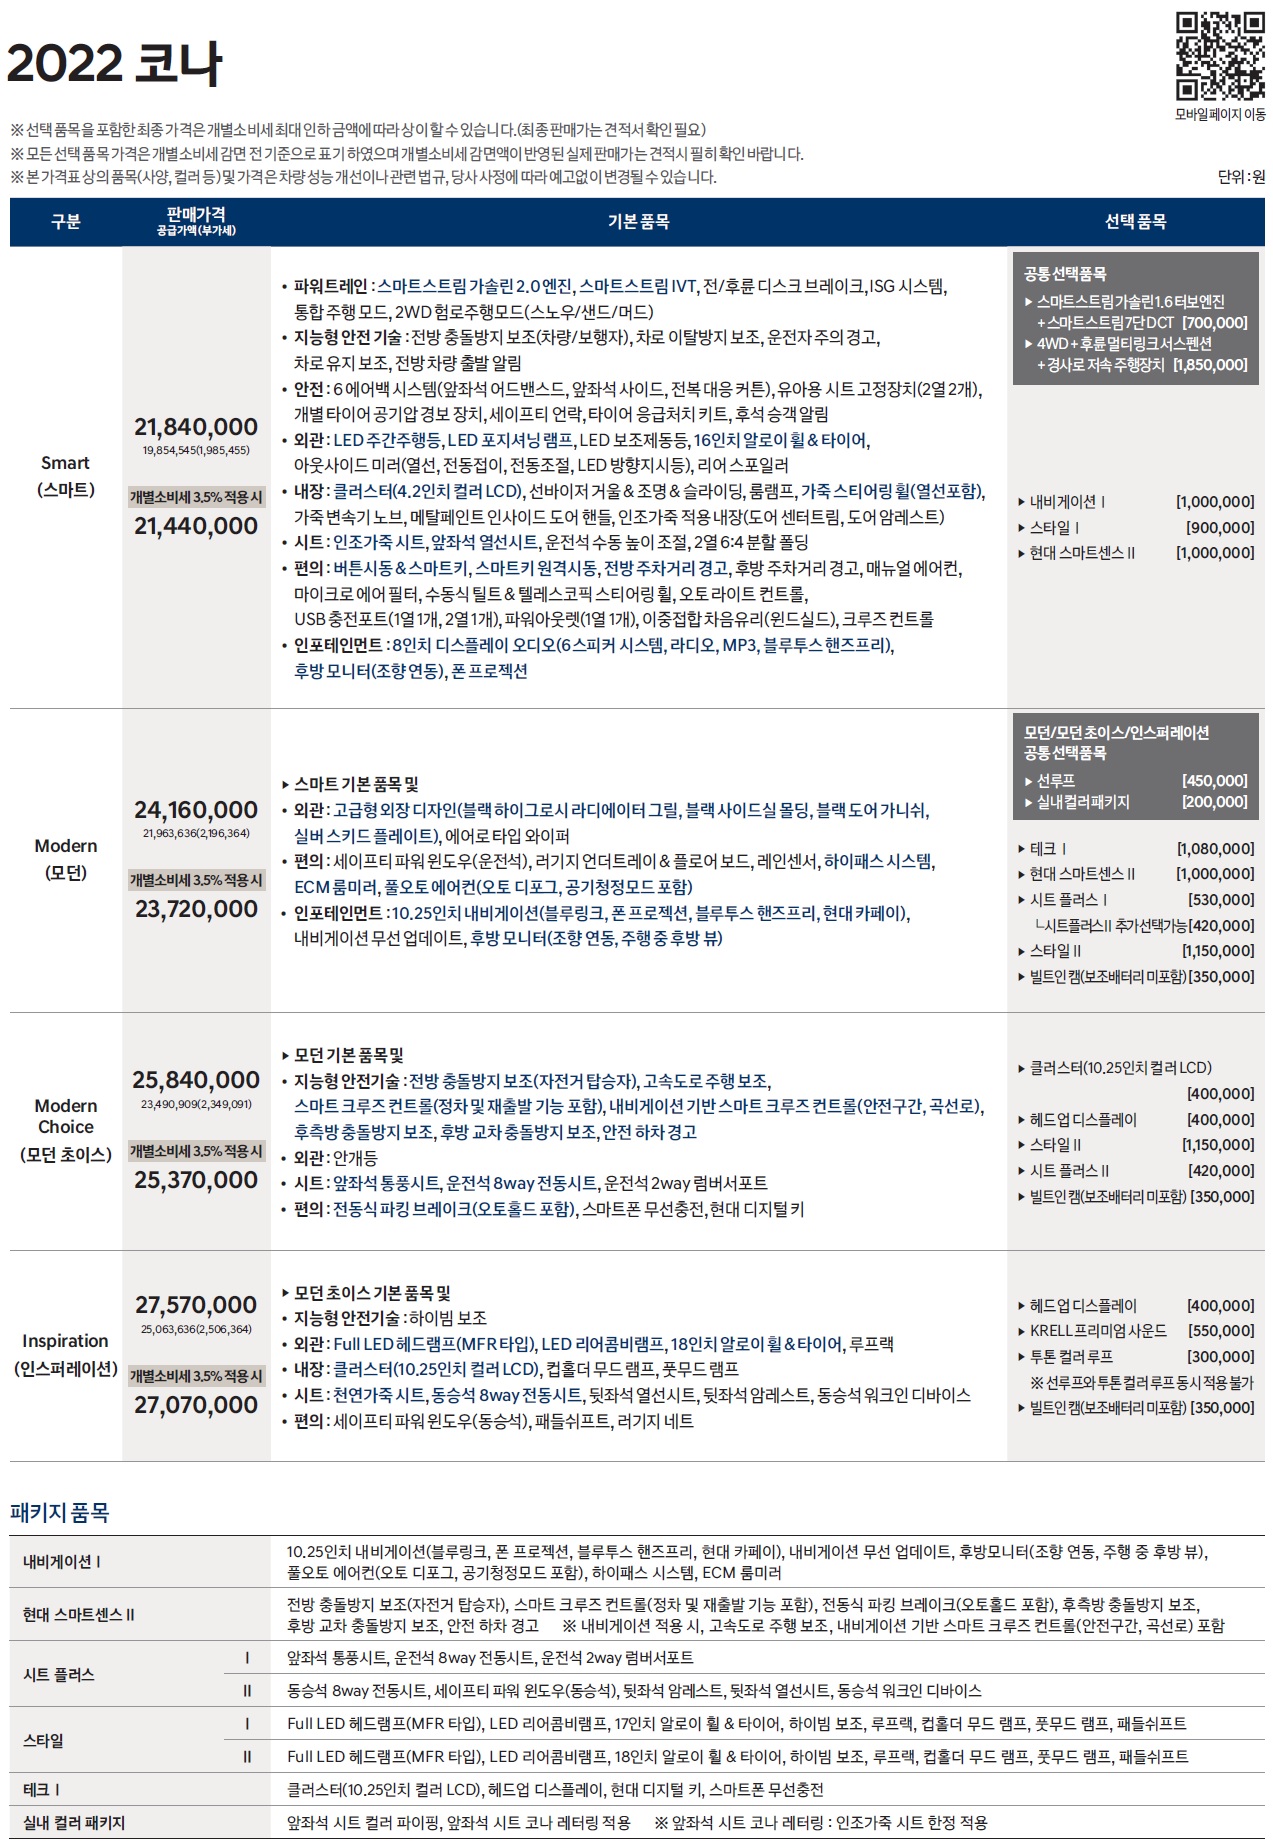 코나 가격표 - 2022년형 (2022년 04월) -1.jpg